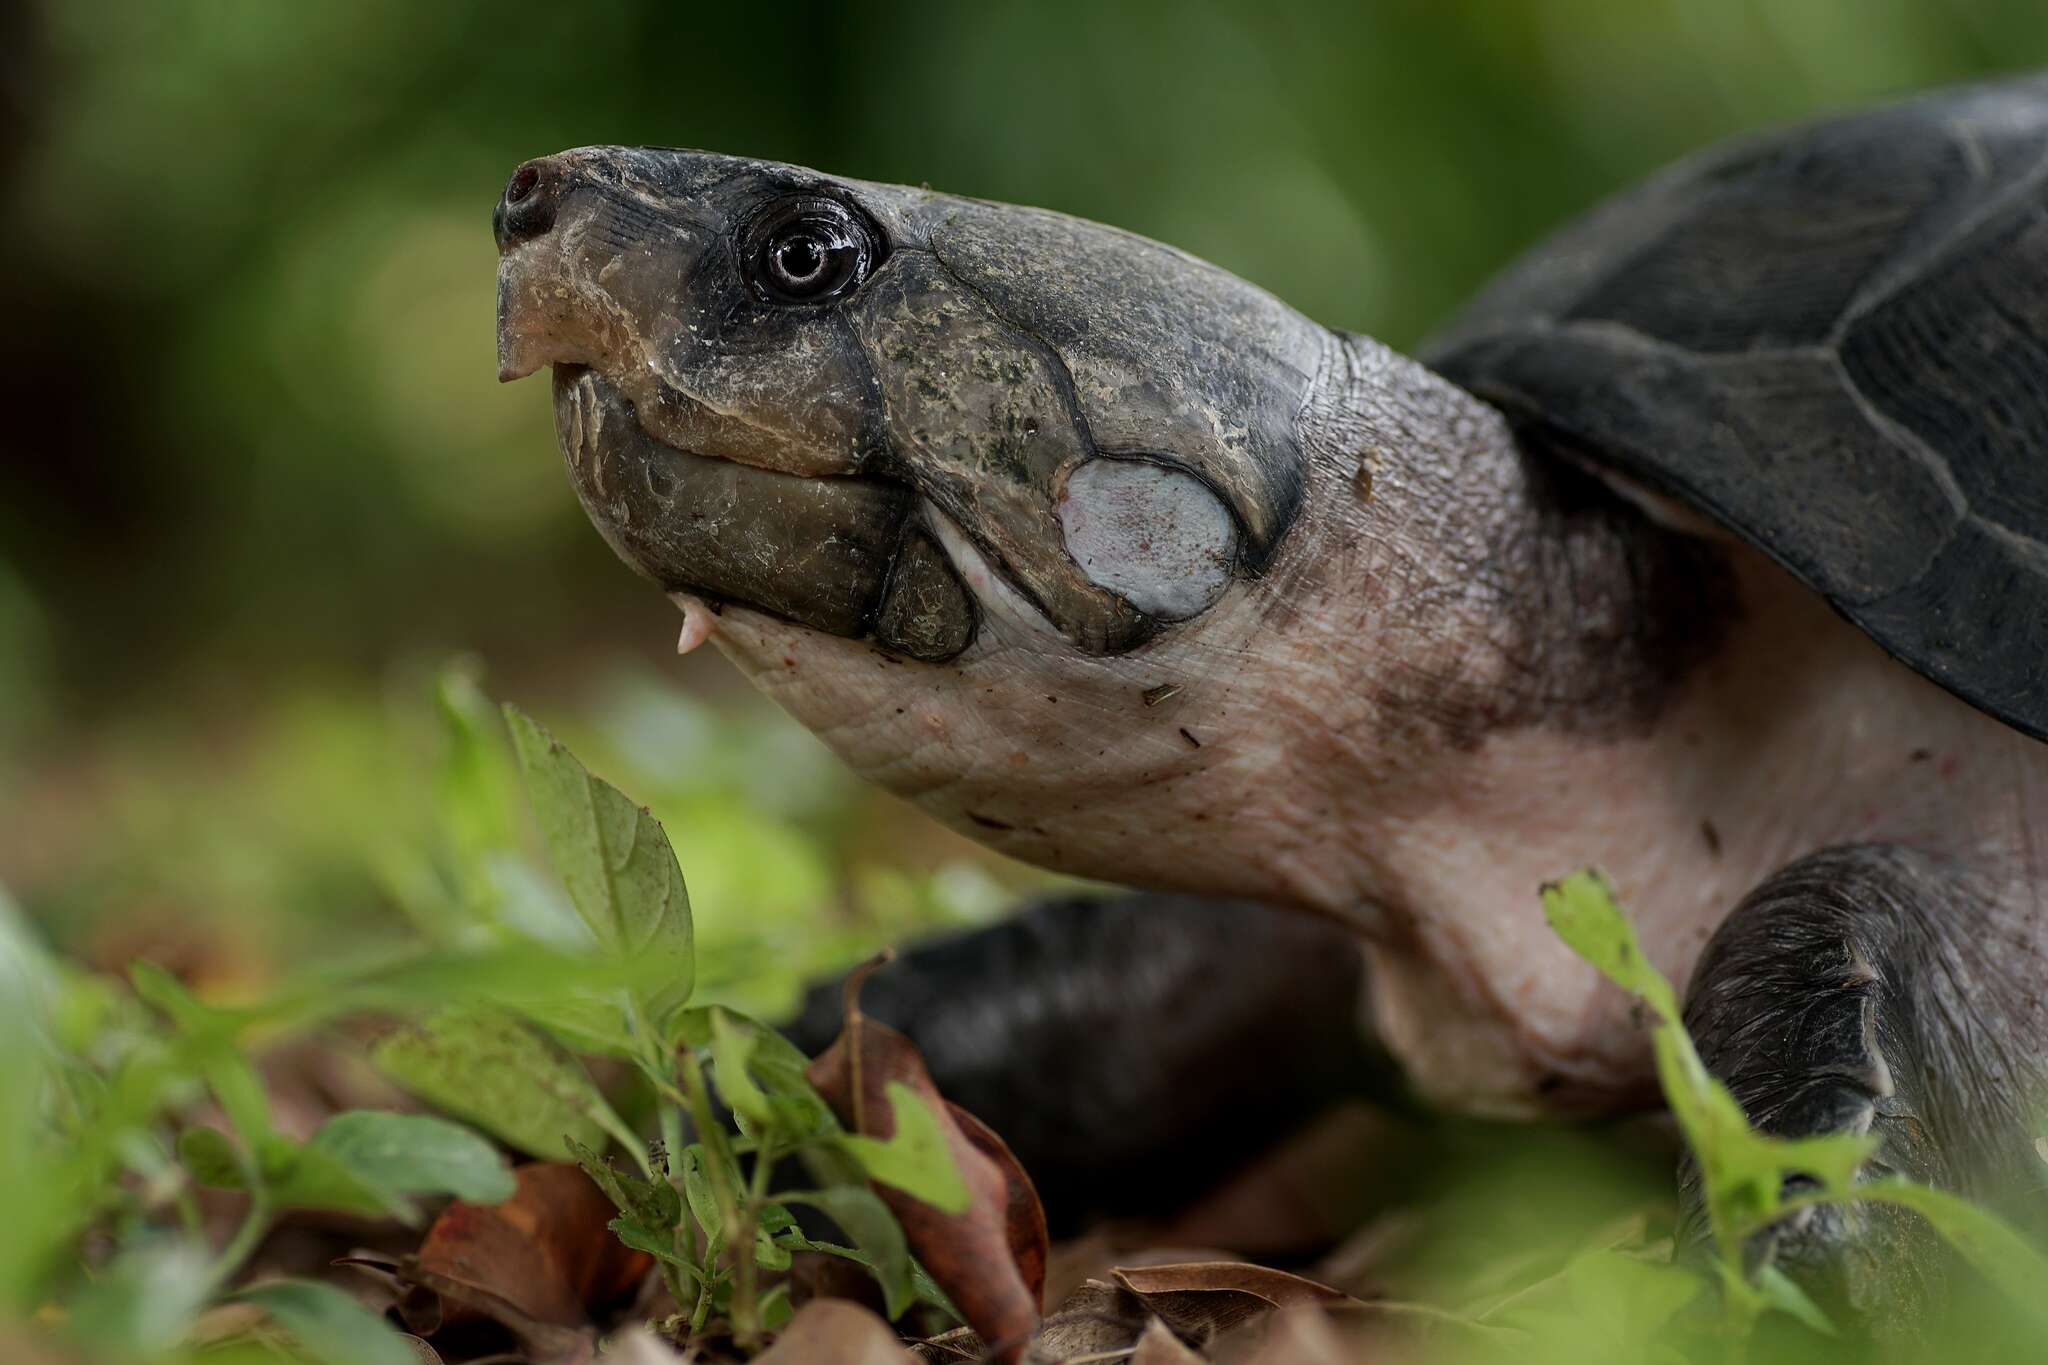 Image of Big-headed Amazon River Turtle